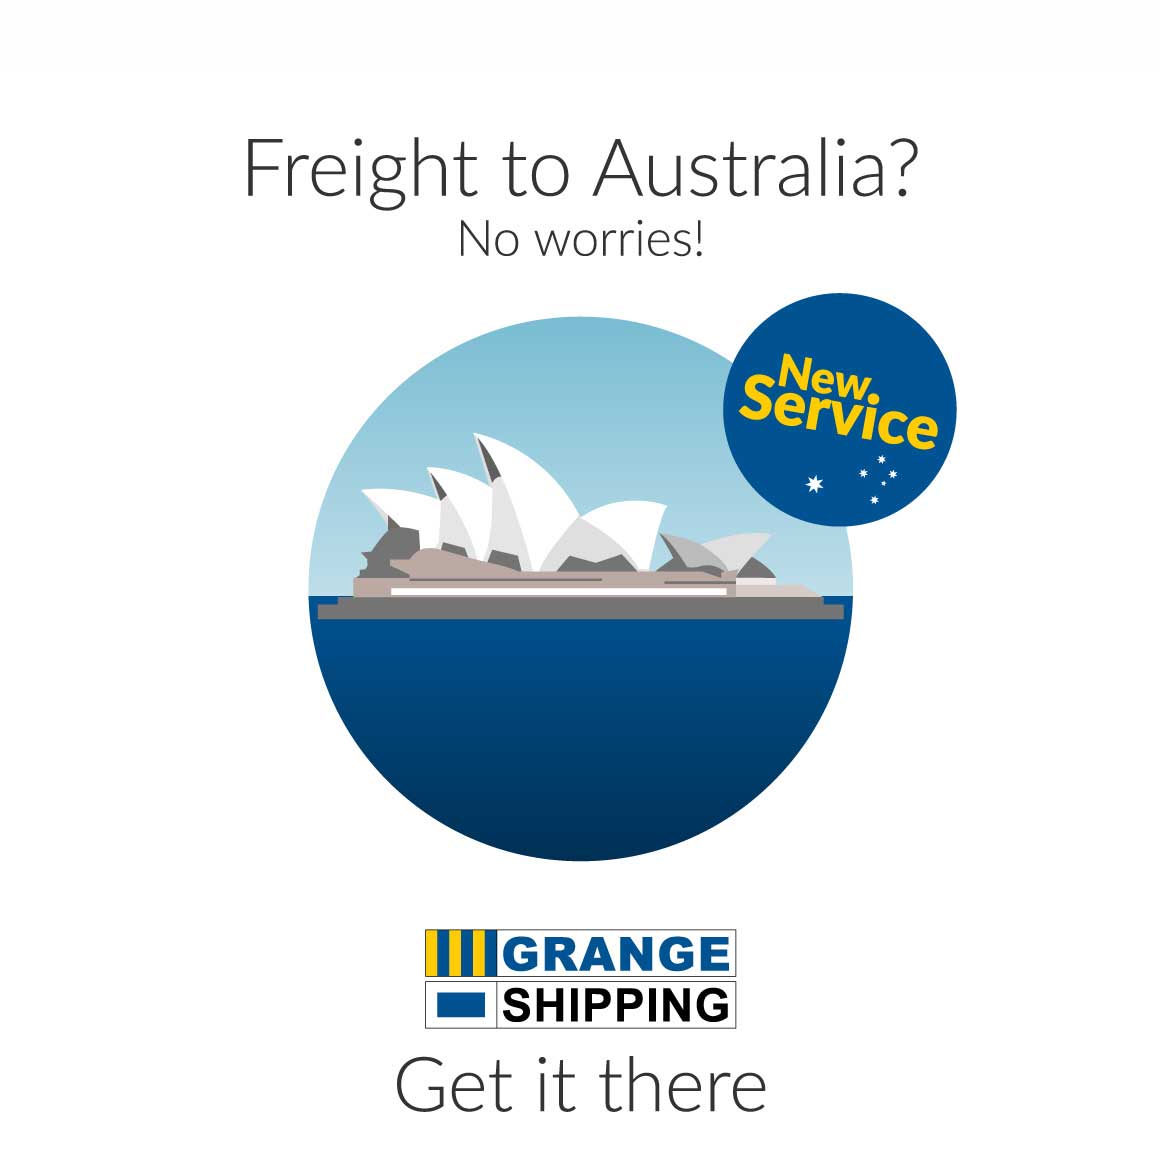 FreightToAustralia